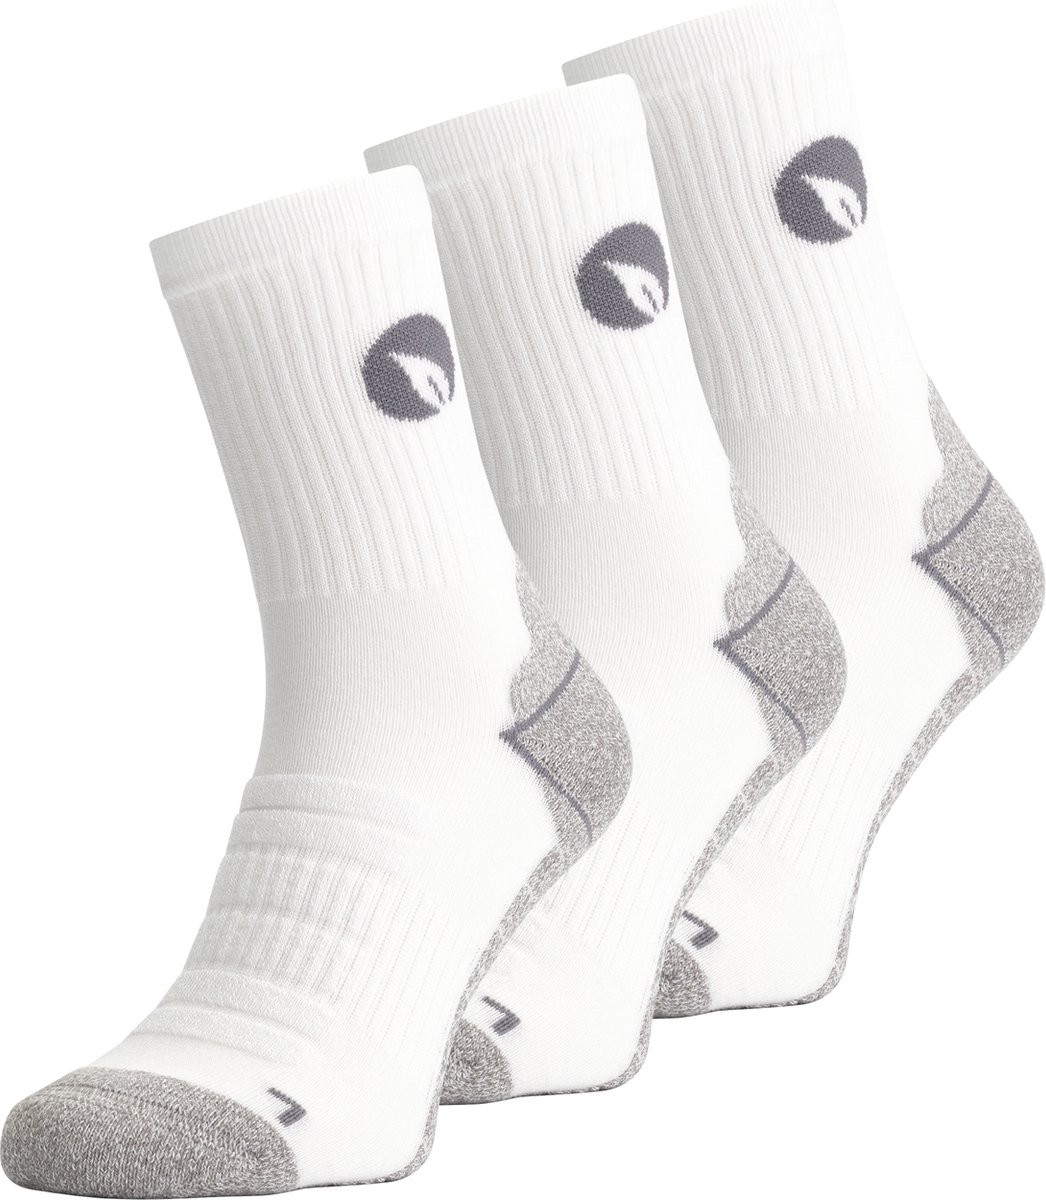 Bambocks Bamboe Padel Tennis sokken 3 paar Wit